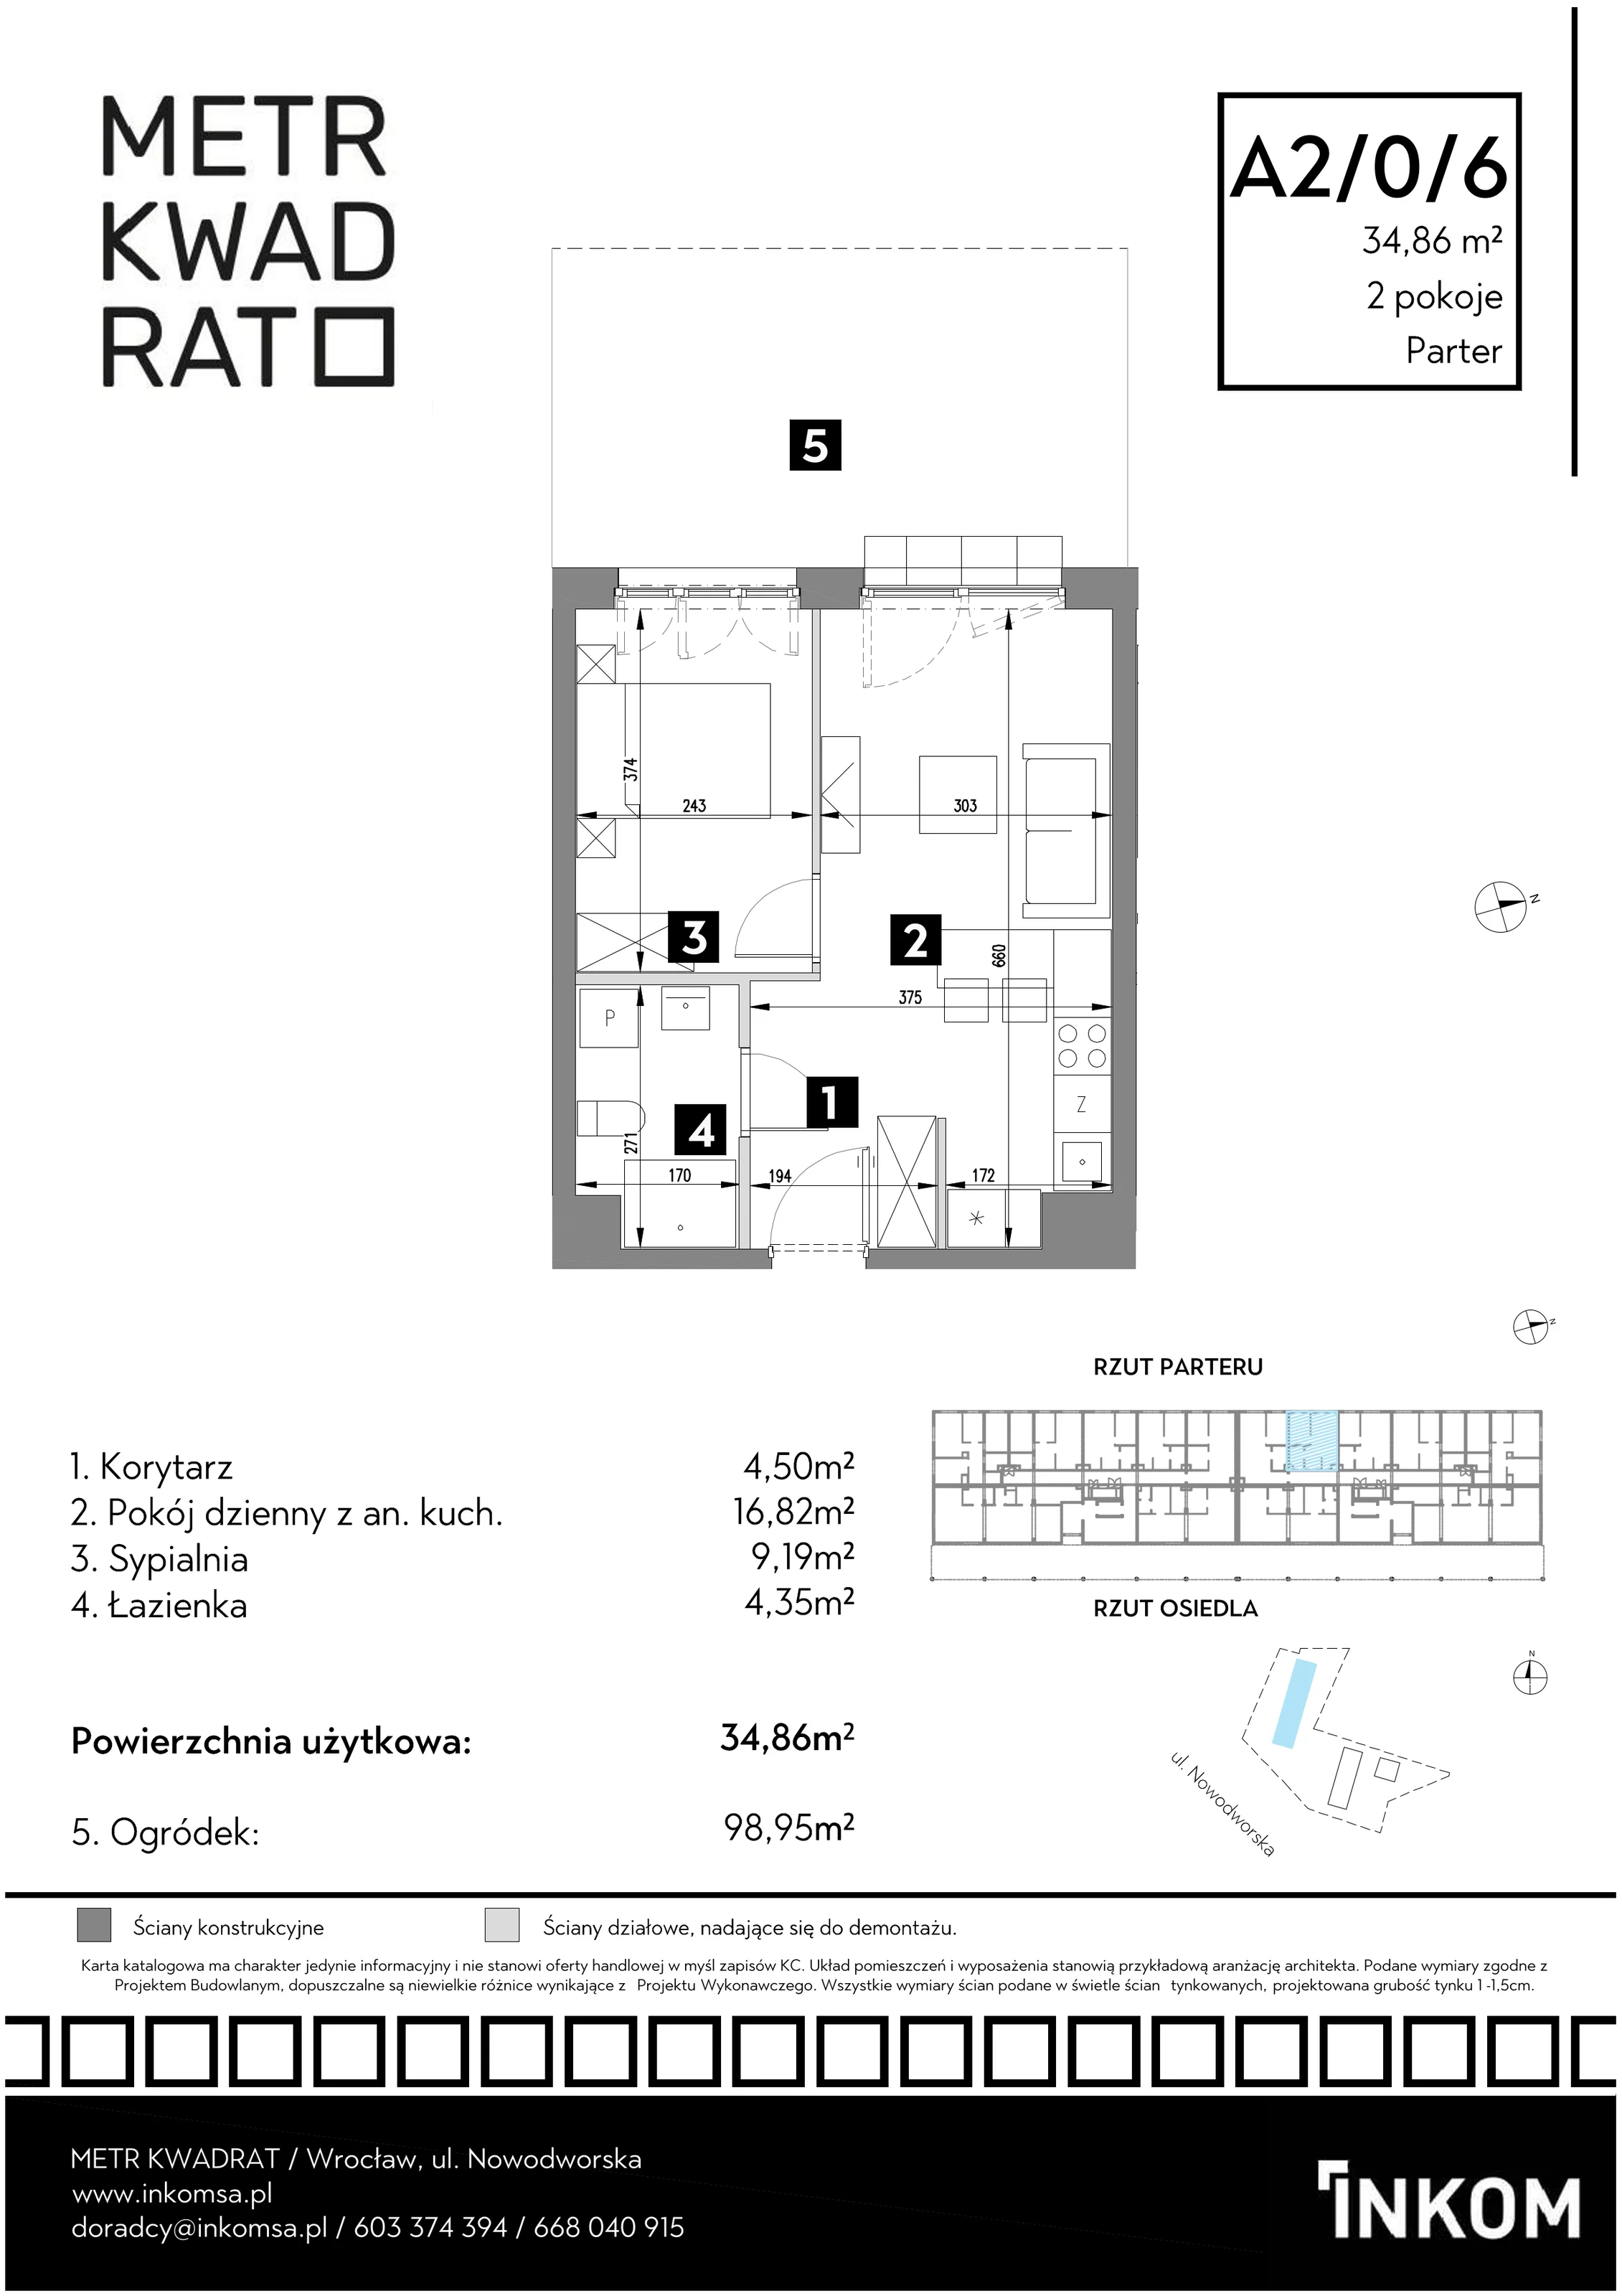 Mieszkanie 34,86 m², parter, oferta nr A2/0/6, Metr Kwadrat, Wrocław, Nowy Dwór, ul. Nowodworska 17B